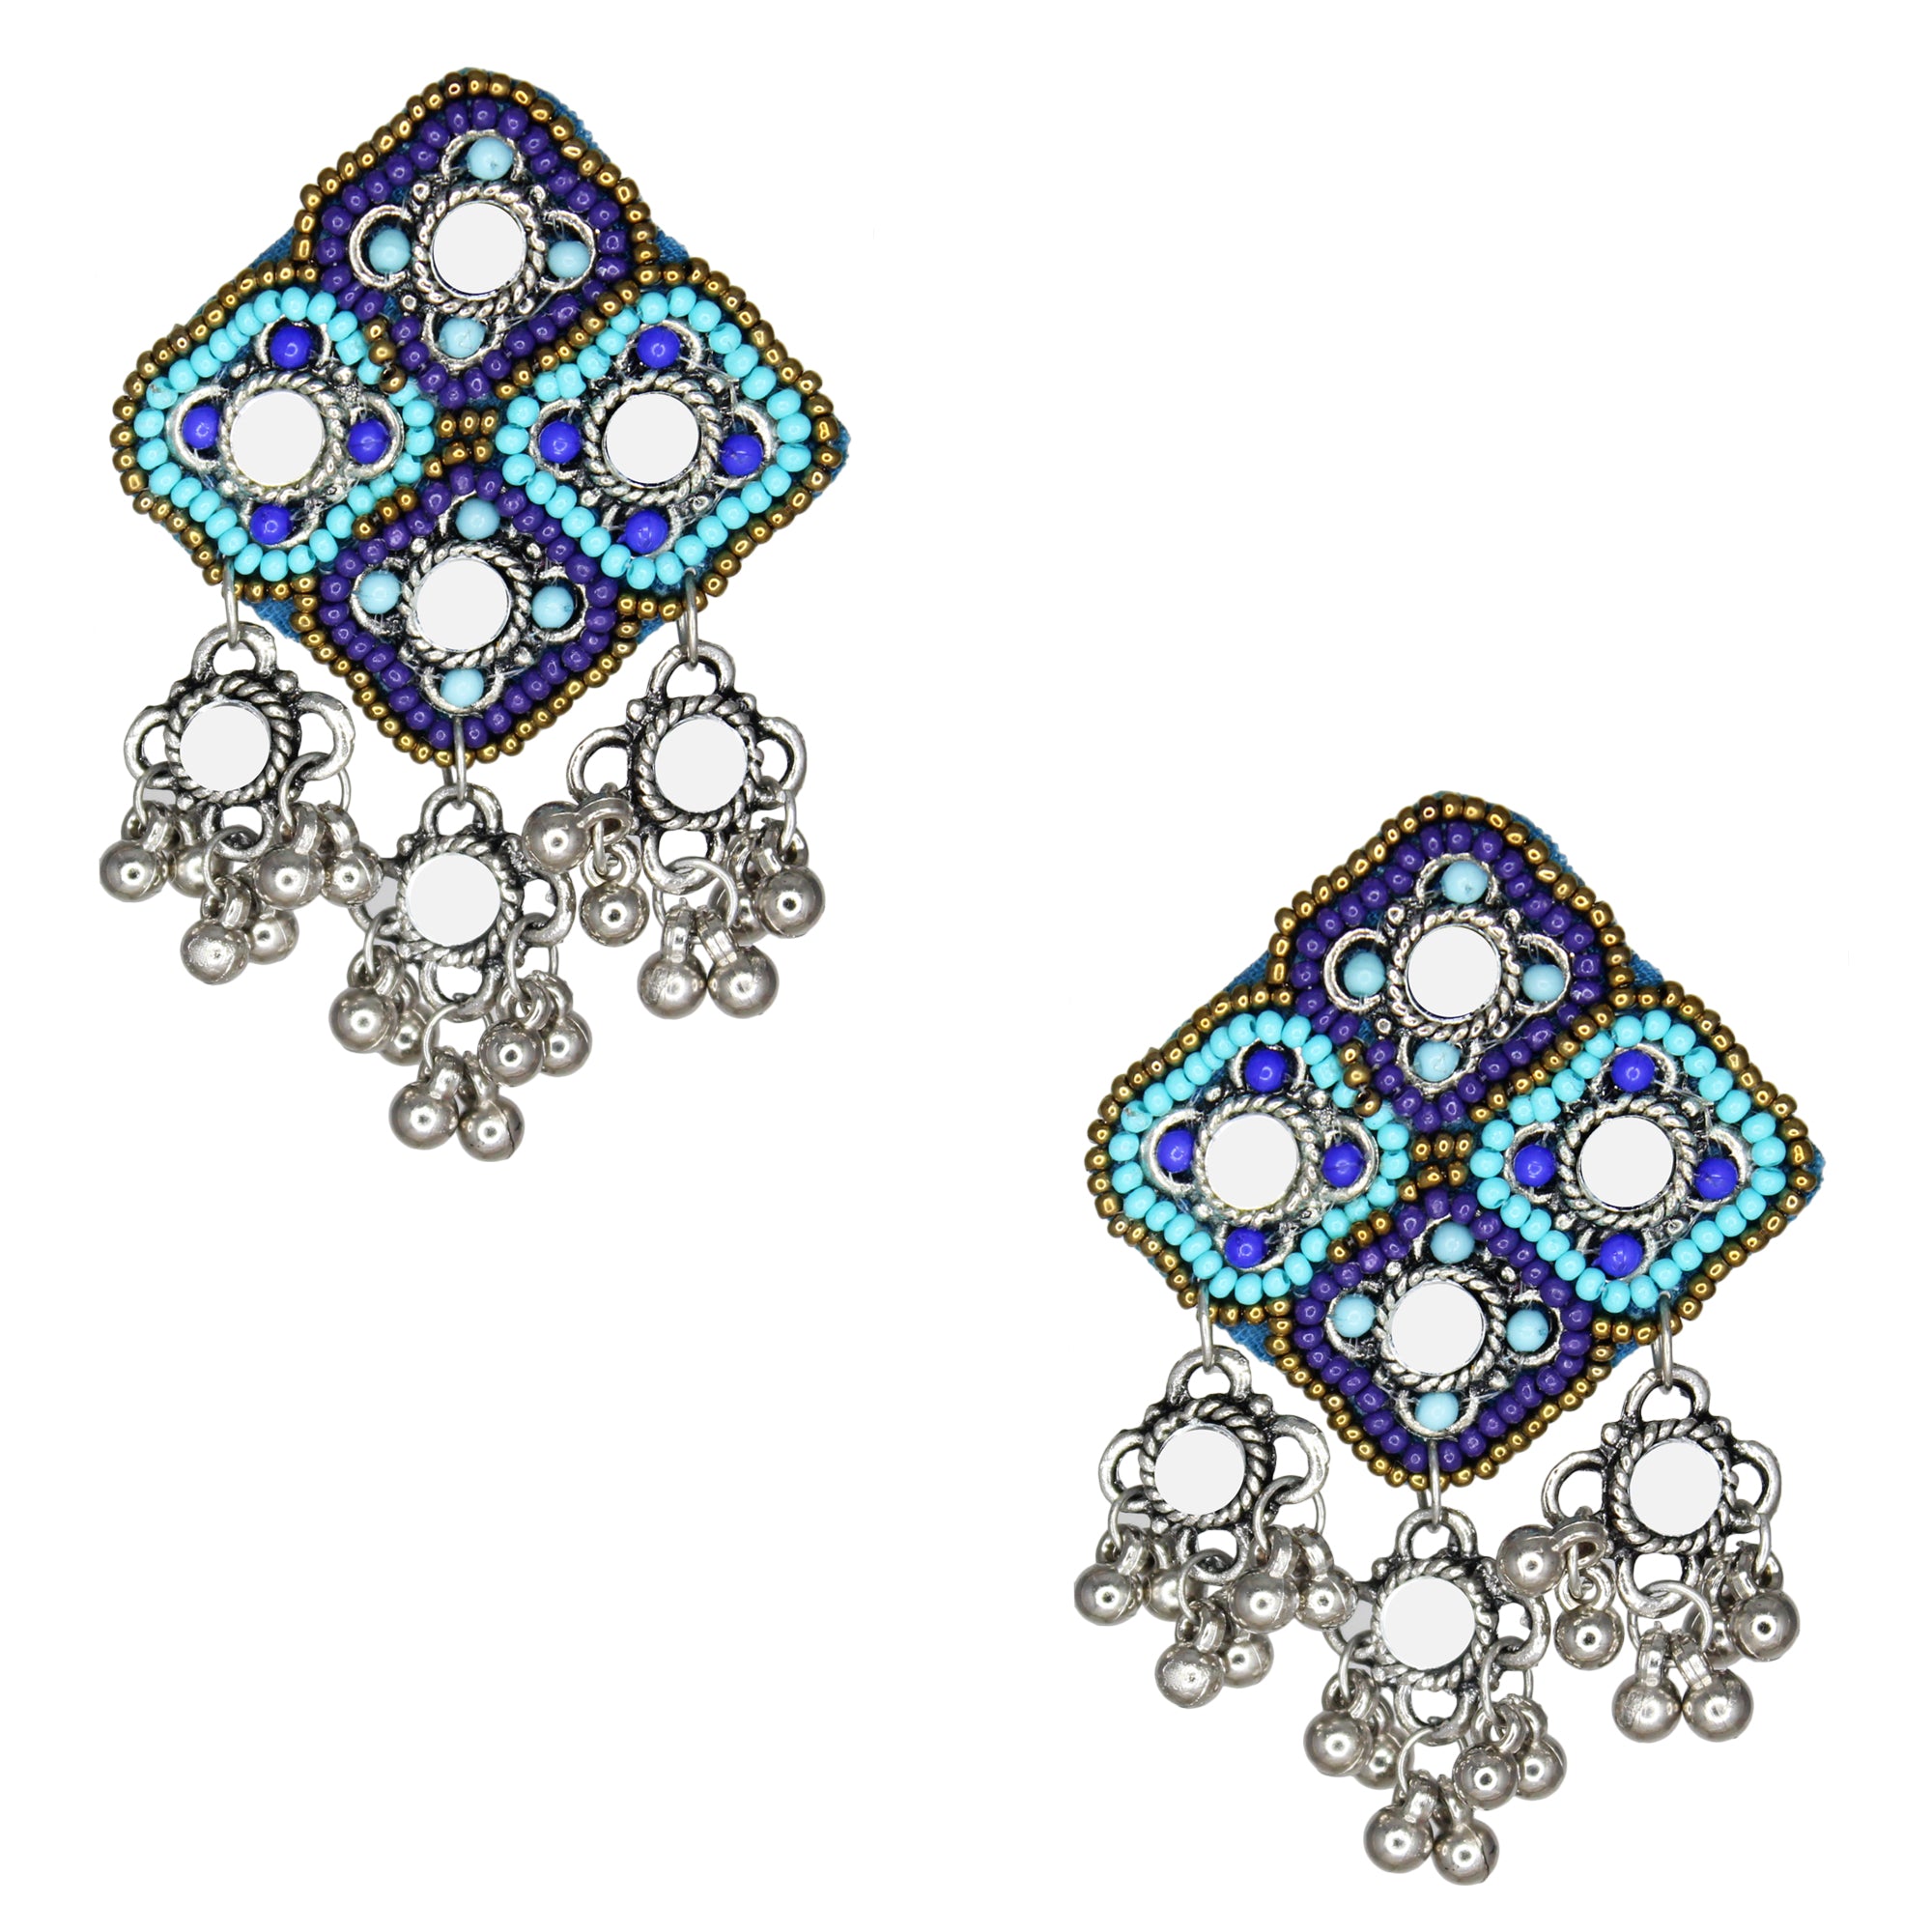 Hastkalakari Handmade Beaded Blue Diamond Shape Mirror Earrings For Women